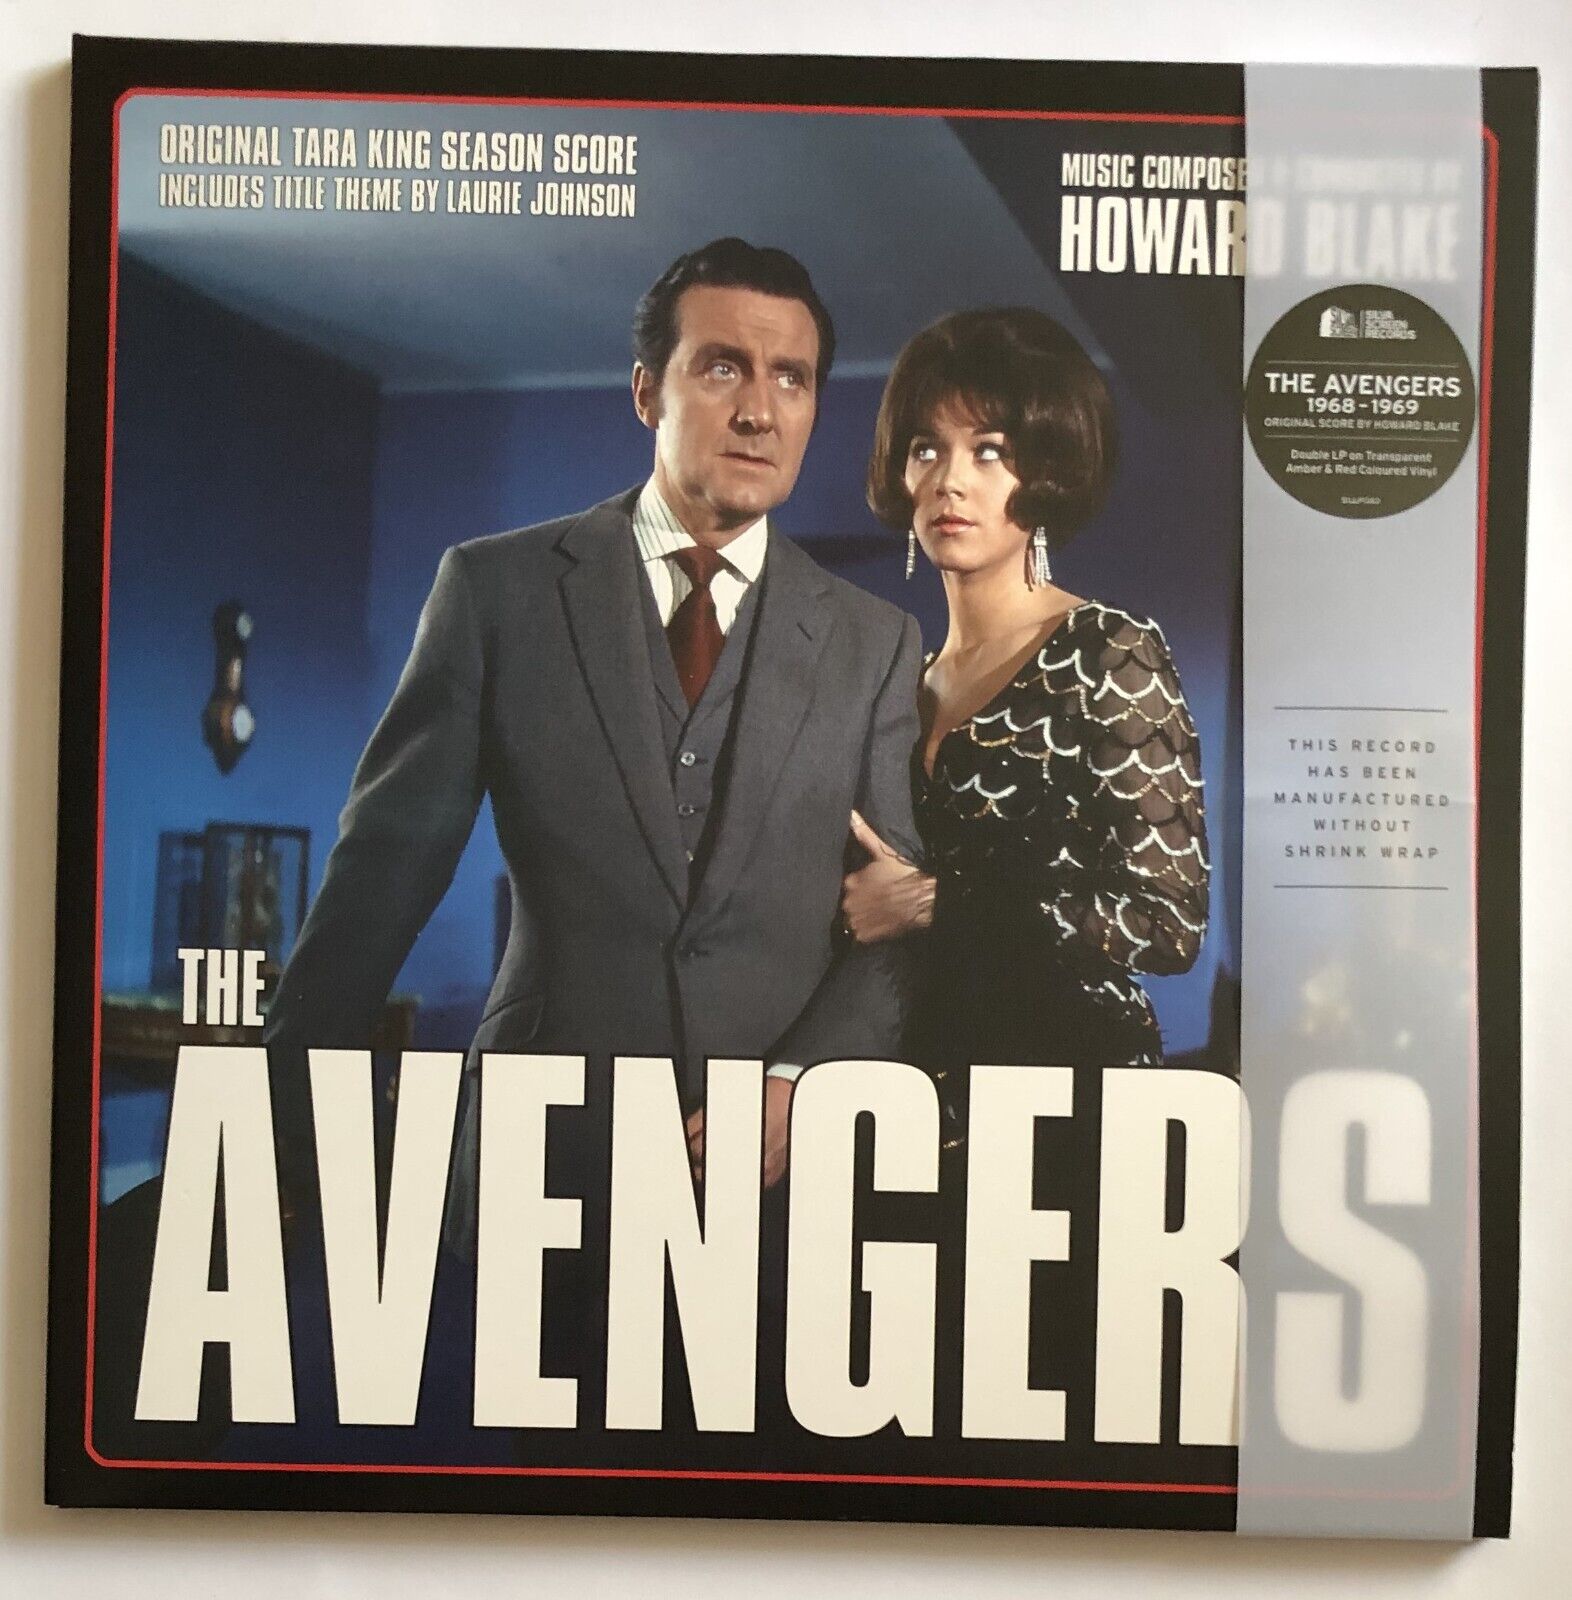 Howard Blake The Avengers 1968-1969 Coloured Vinyl Record New 738572136376